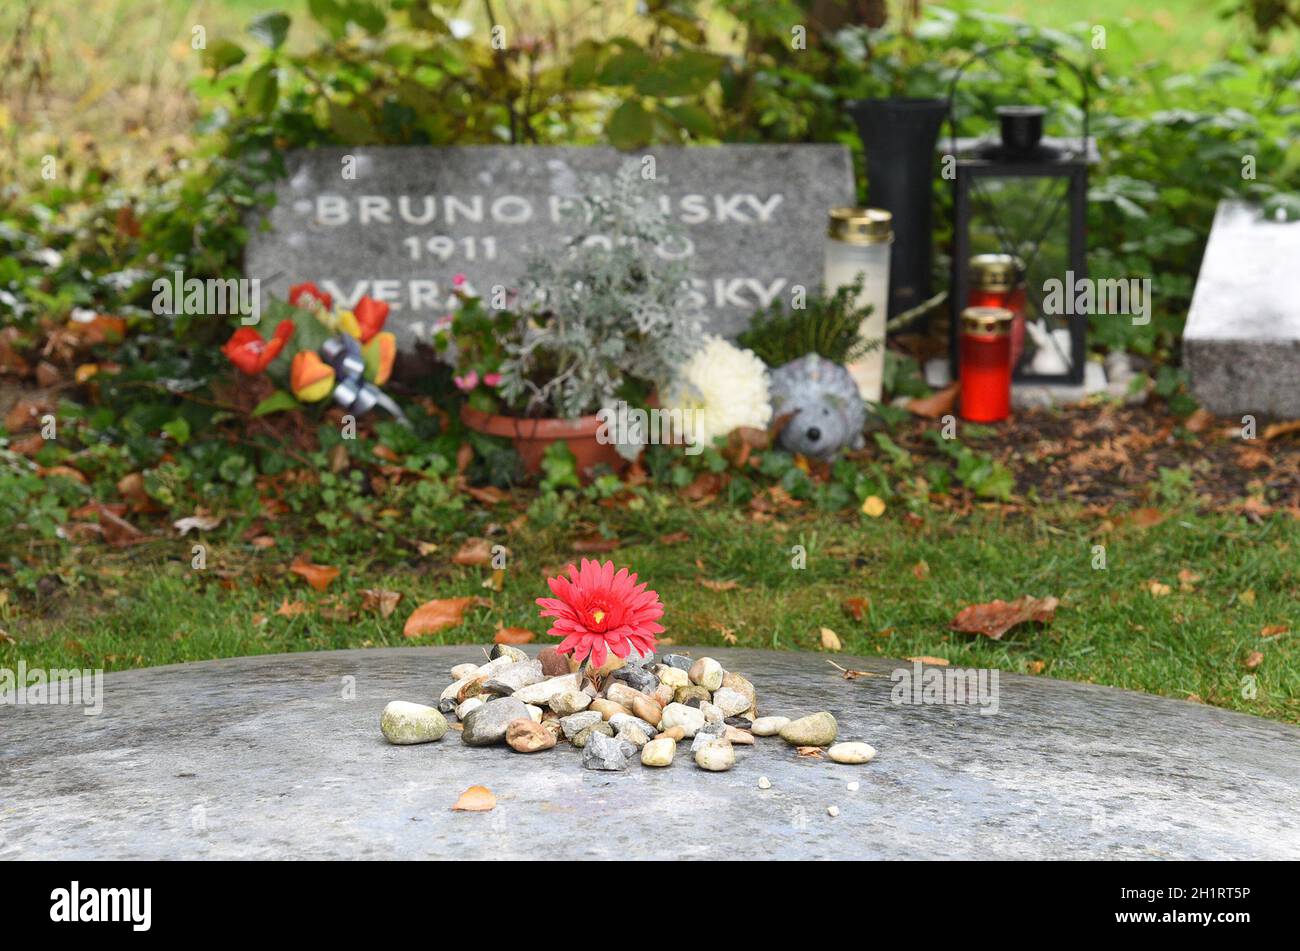 Zentralfriedhof in Wien - Ehrengrab Bruno Kreisky Stock Photo